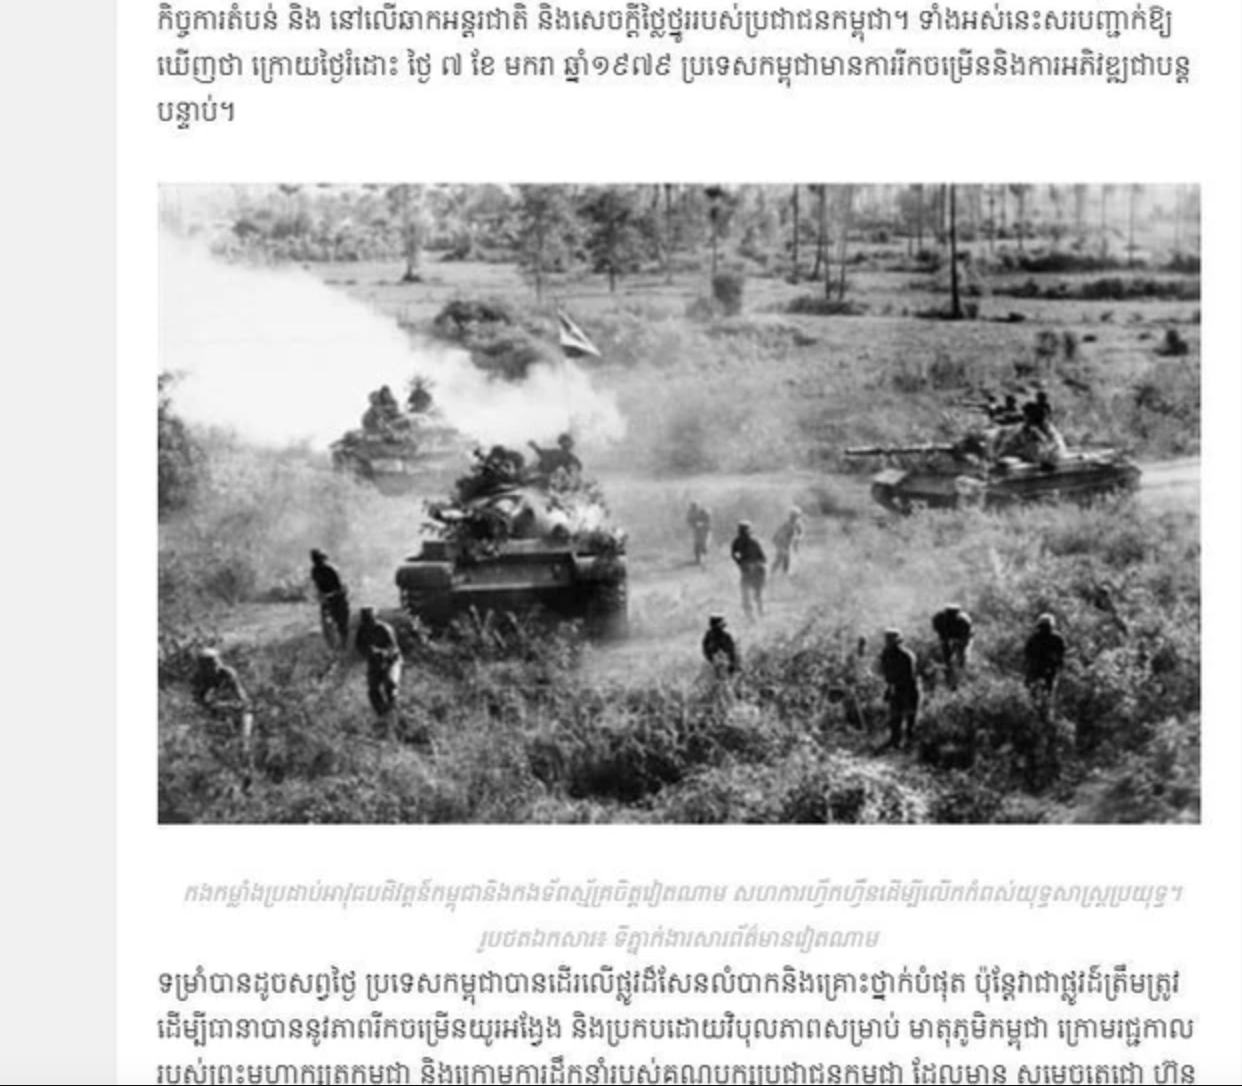 Báo điện tử Thmey Thmey đăng tải hình ảnh về Quân tình nguyện Việt Nam và Quân đội Mặt trận Đoàn kết Cứu quốc Campuchia phối hợp huấn luyện và chiến đấu, tiến vào giải phóng Phnom Penh vào ngày 7.1.1979, ảnh chụp màn hình. Ảnh: TTXVN